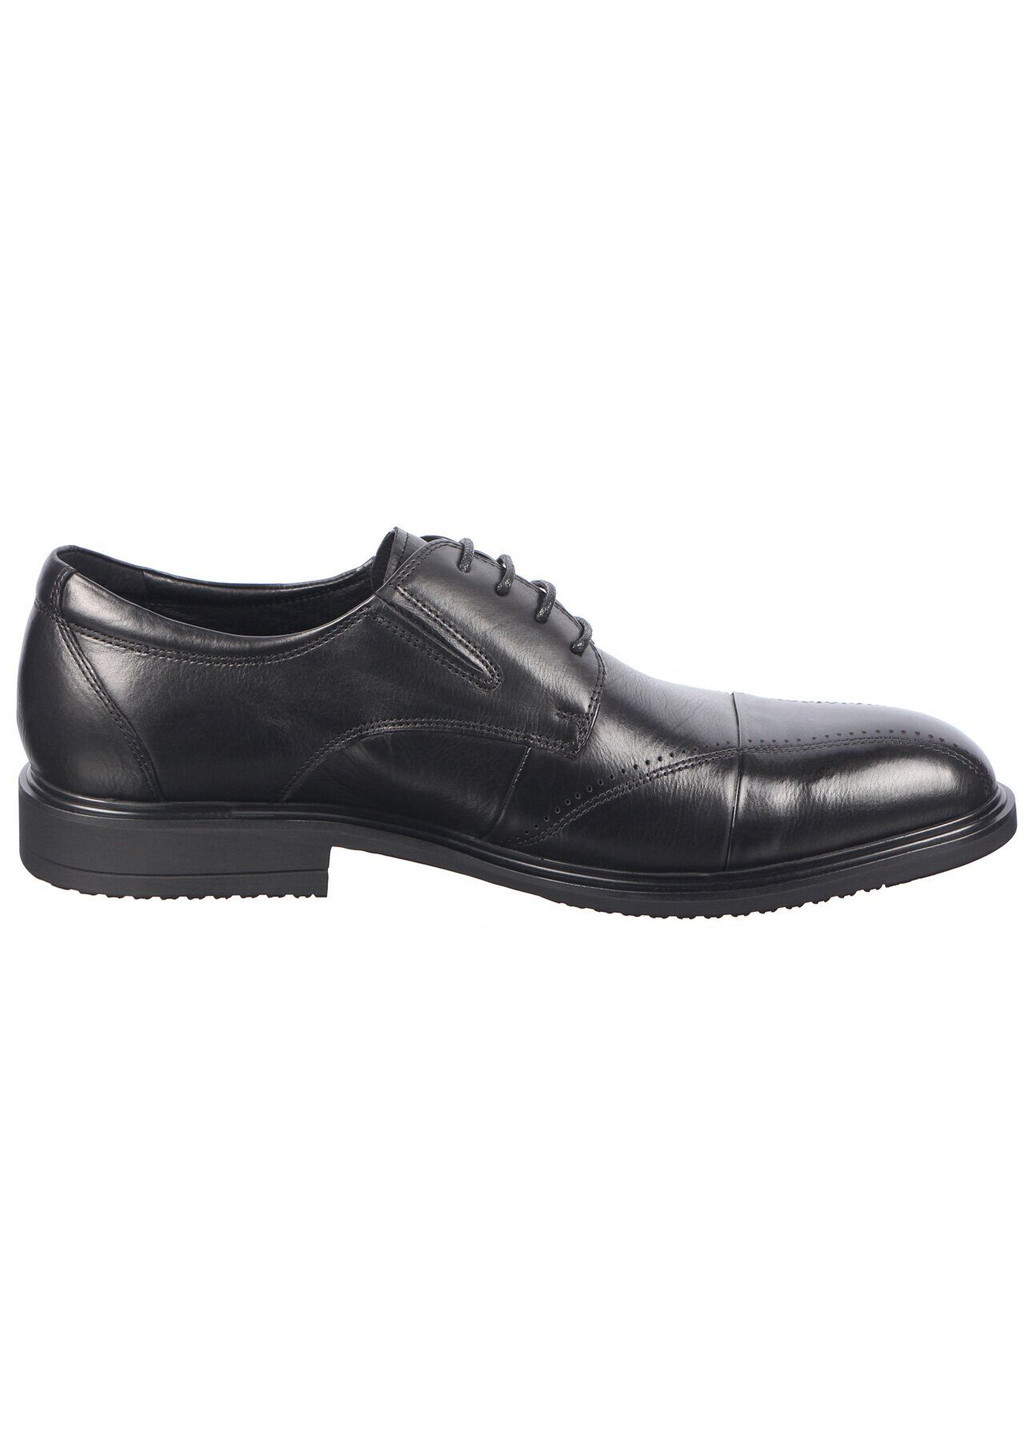 Черные мужские классические туфли 195376 Marco Pinotti на шнурках